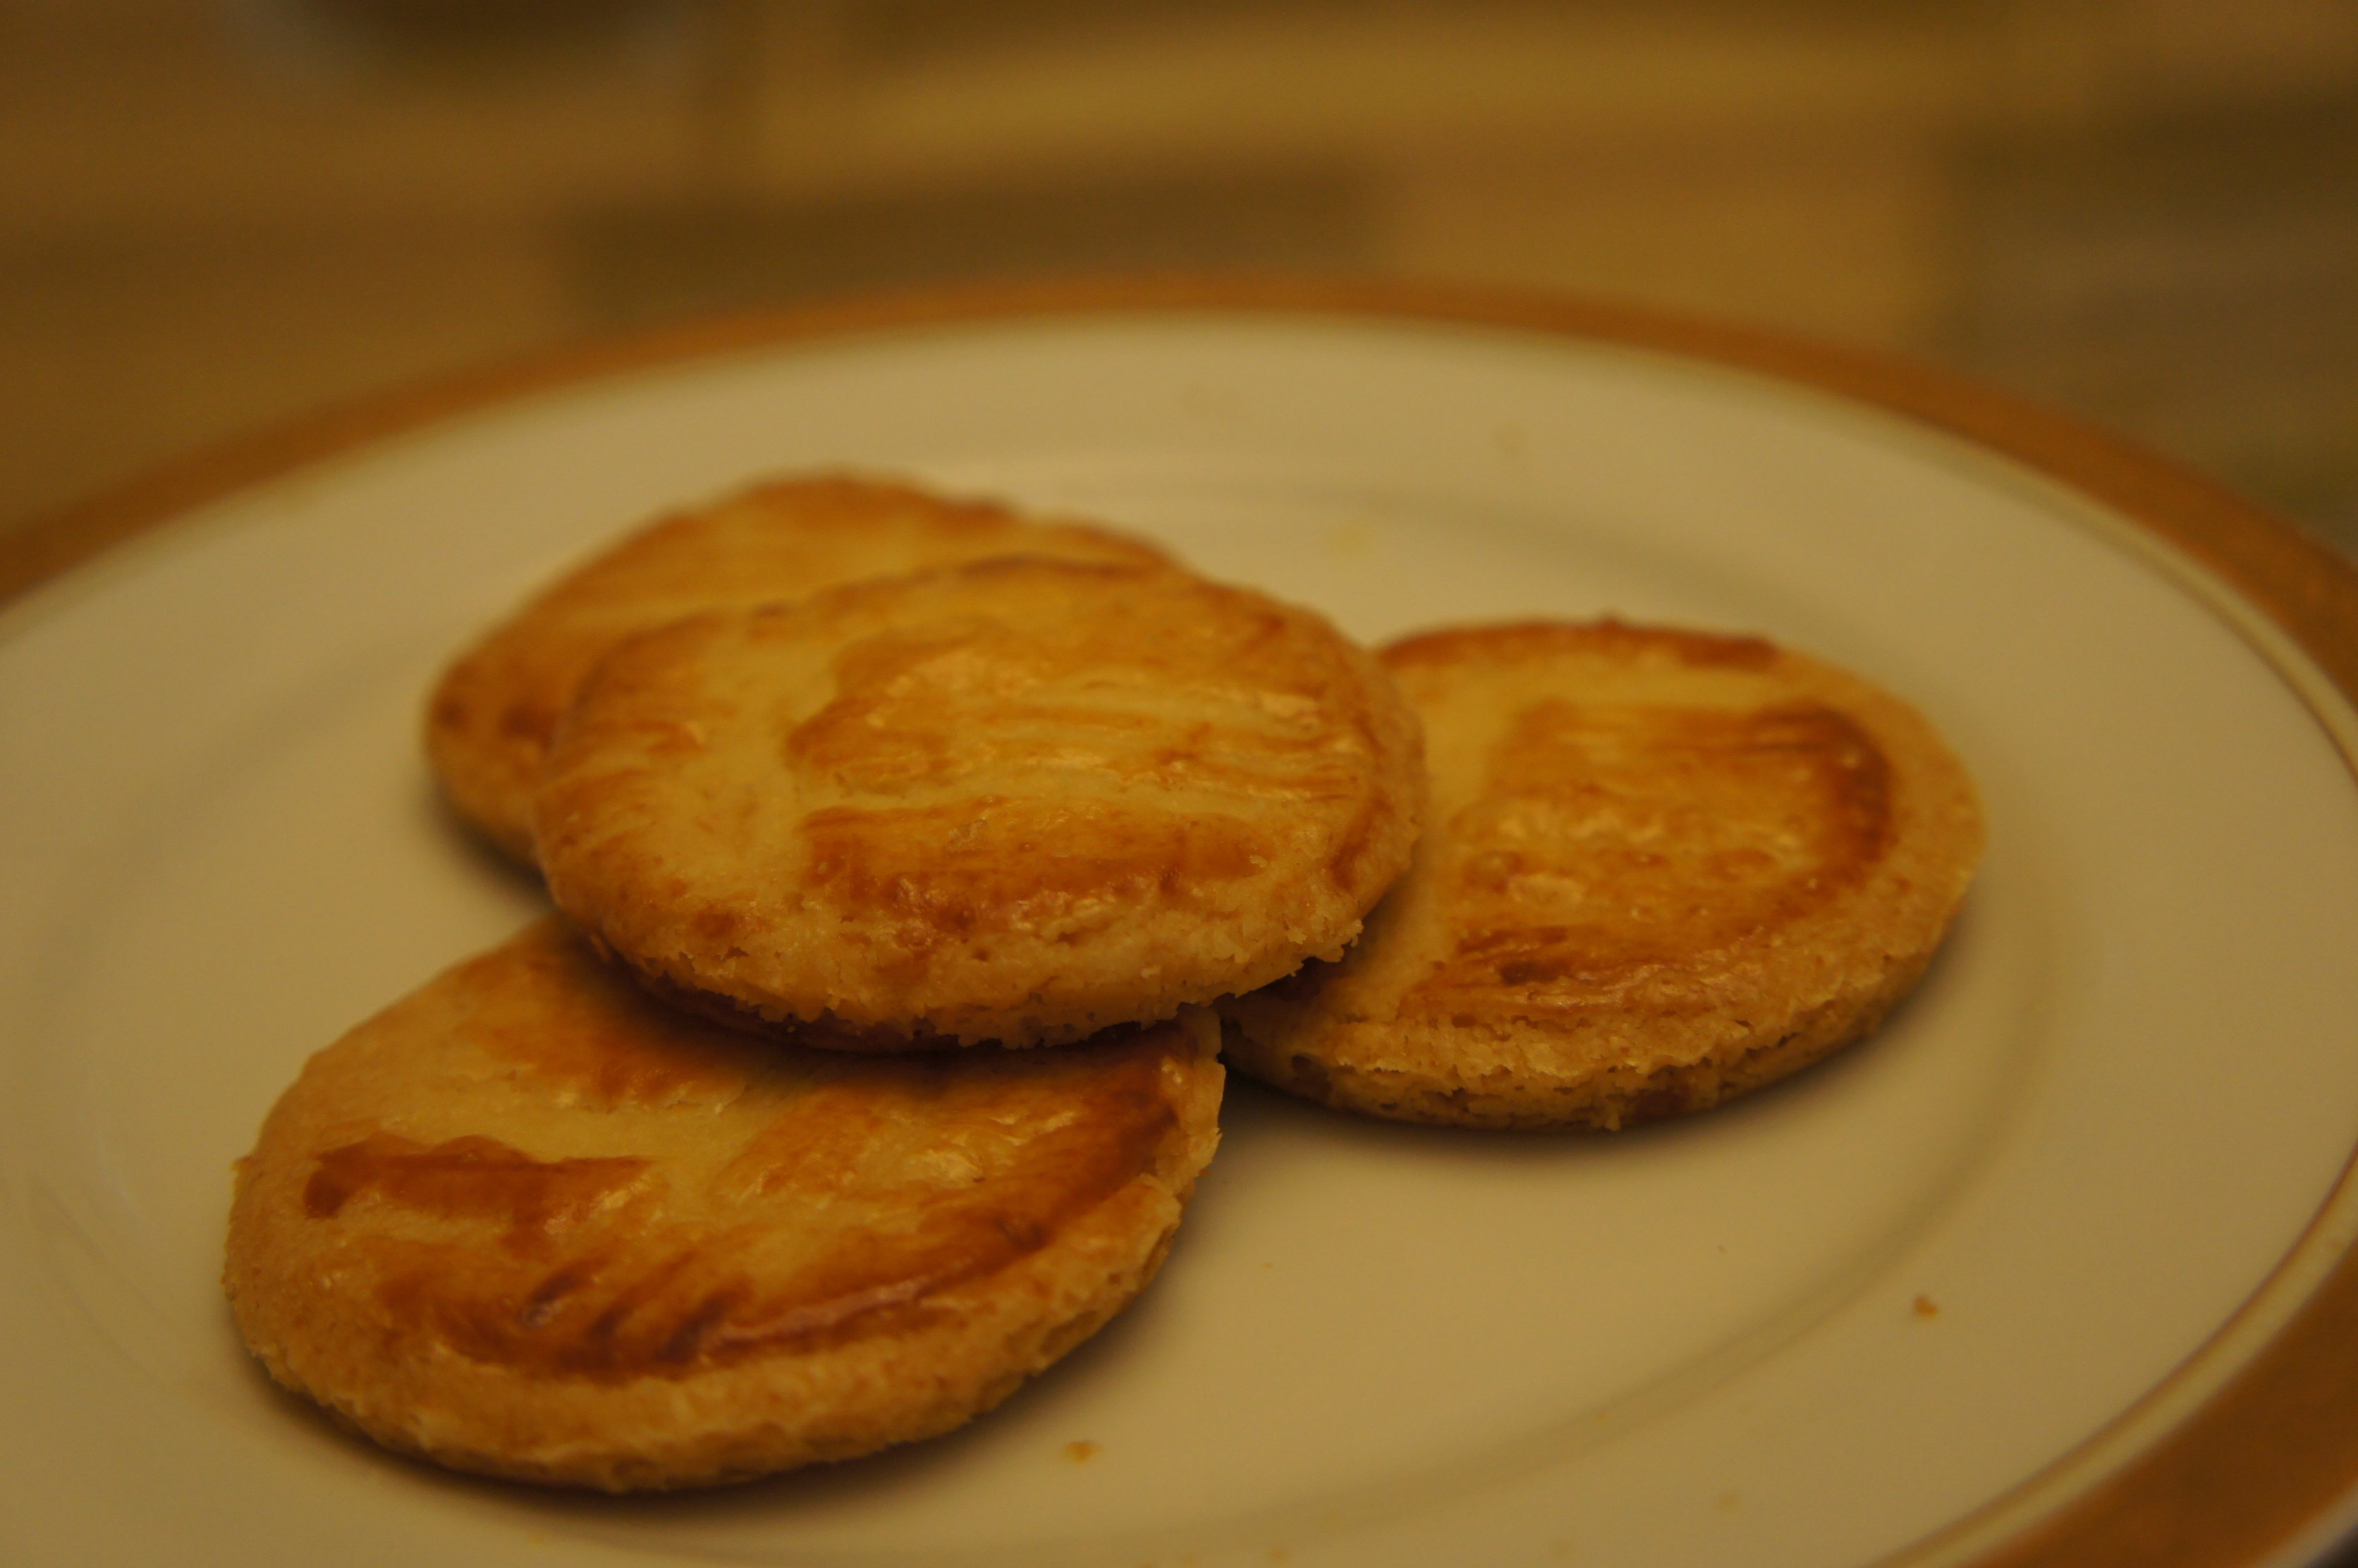 布列塔尼沙沙饼(Breton sand cookies)